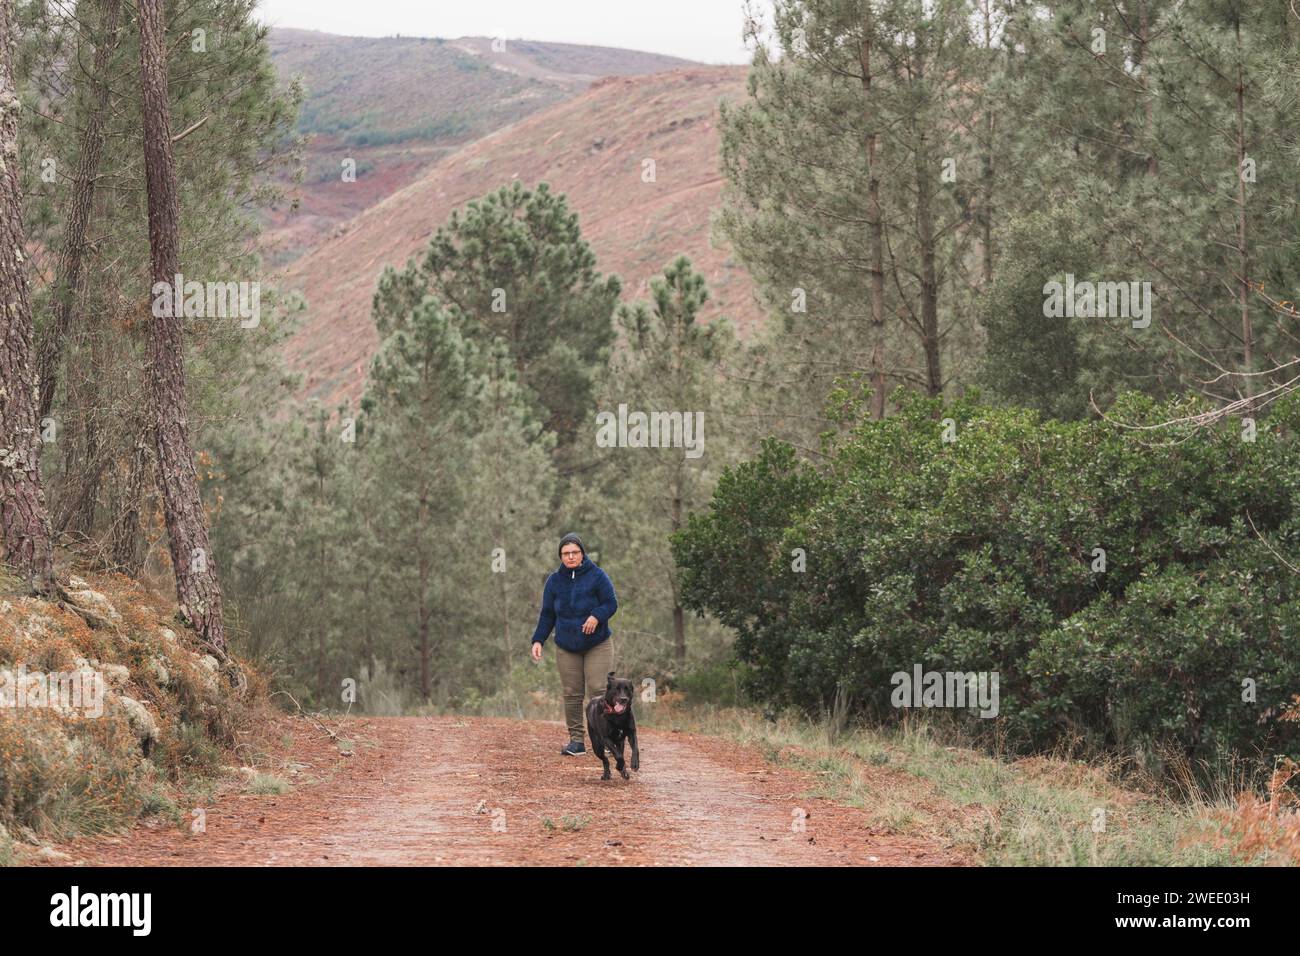 Frau umarmt einen schwarzen labrador. Frau in einer blauen Skijacke. Herbst im Wald. Mit einem Hund im Wald spazieren gehen. Lifestyle. Sportbekleidung zum Wandern. H Stockfoto